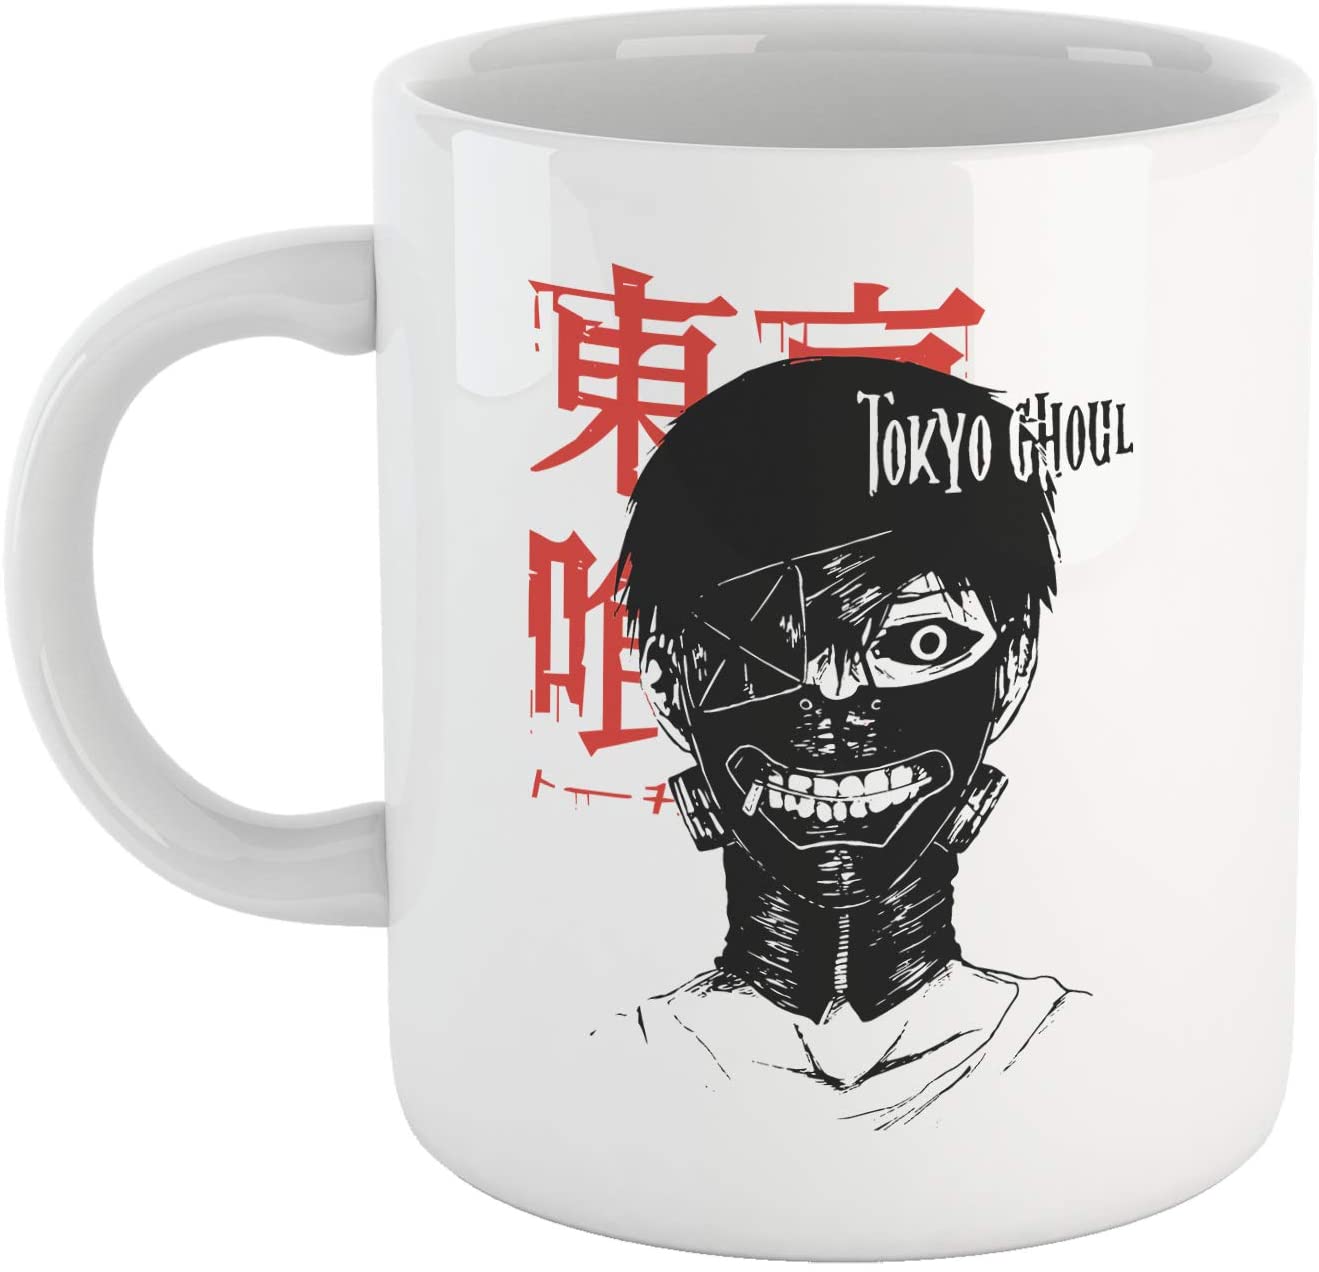 Maroon Tazza Tokio Ghoul - Mug Personalizzata sul Manga e Anime Giapponese - Choose Ur Color Cuc shop